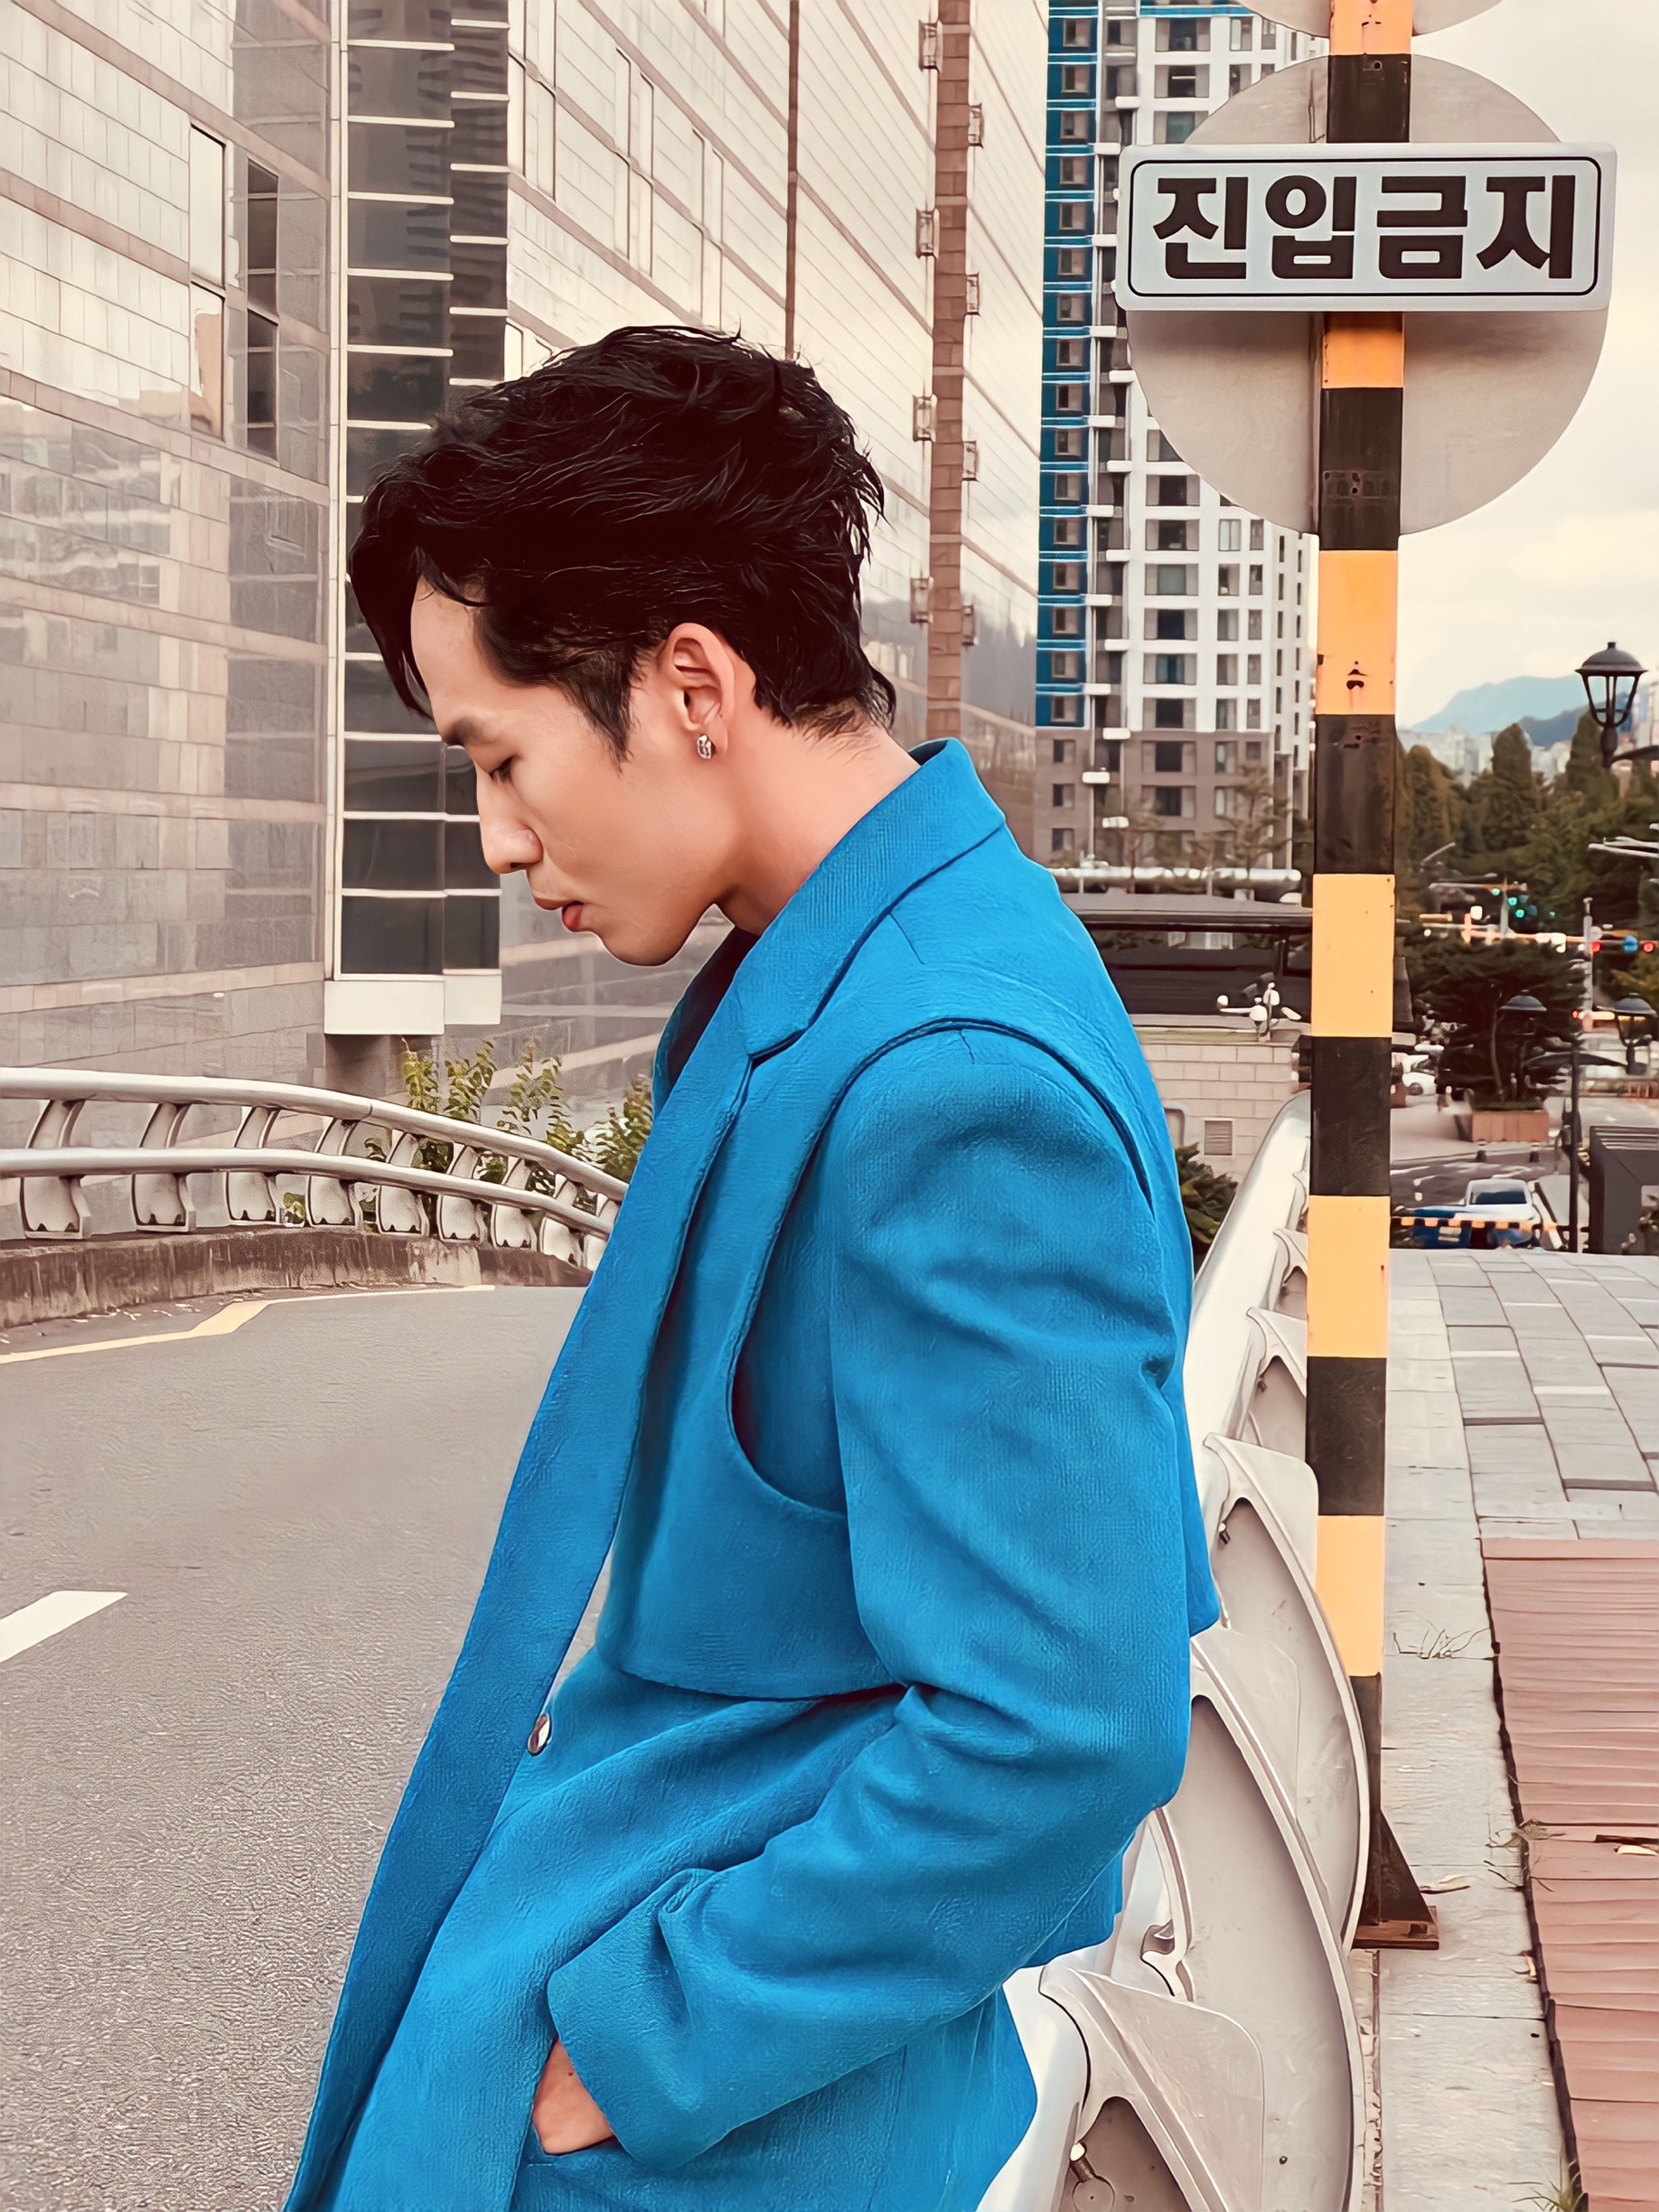 Nam diễn viên tự tin với bộ vest xanh da trời có thiết kế độc đáo, tôn lên vóc dáng săn chắc, chiều cao nổi bật và đồng thời khẳng định được gu thời trang thời thượng của mình.